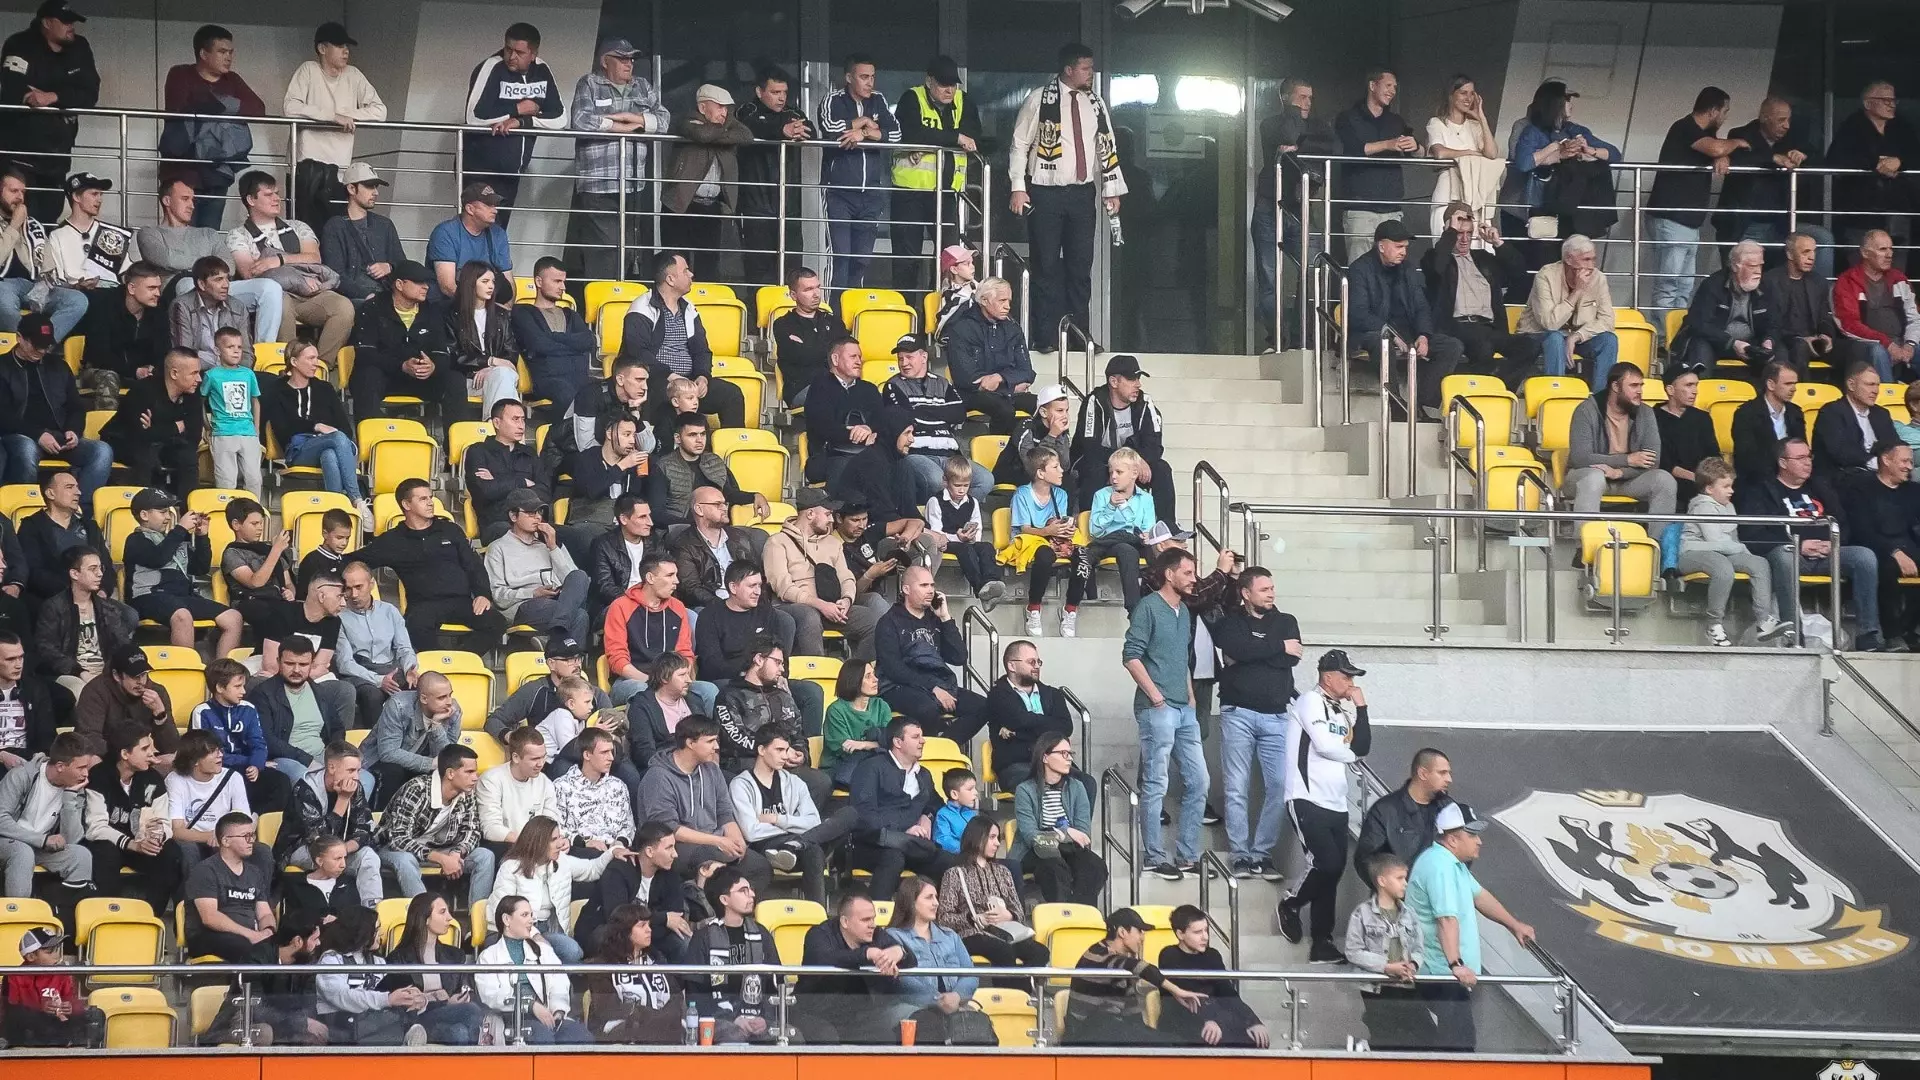 На матч с ФК "Родина" в Тюмени собралось 3500 зрителей.